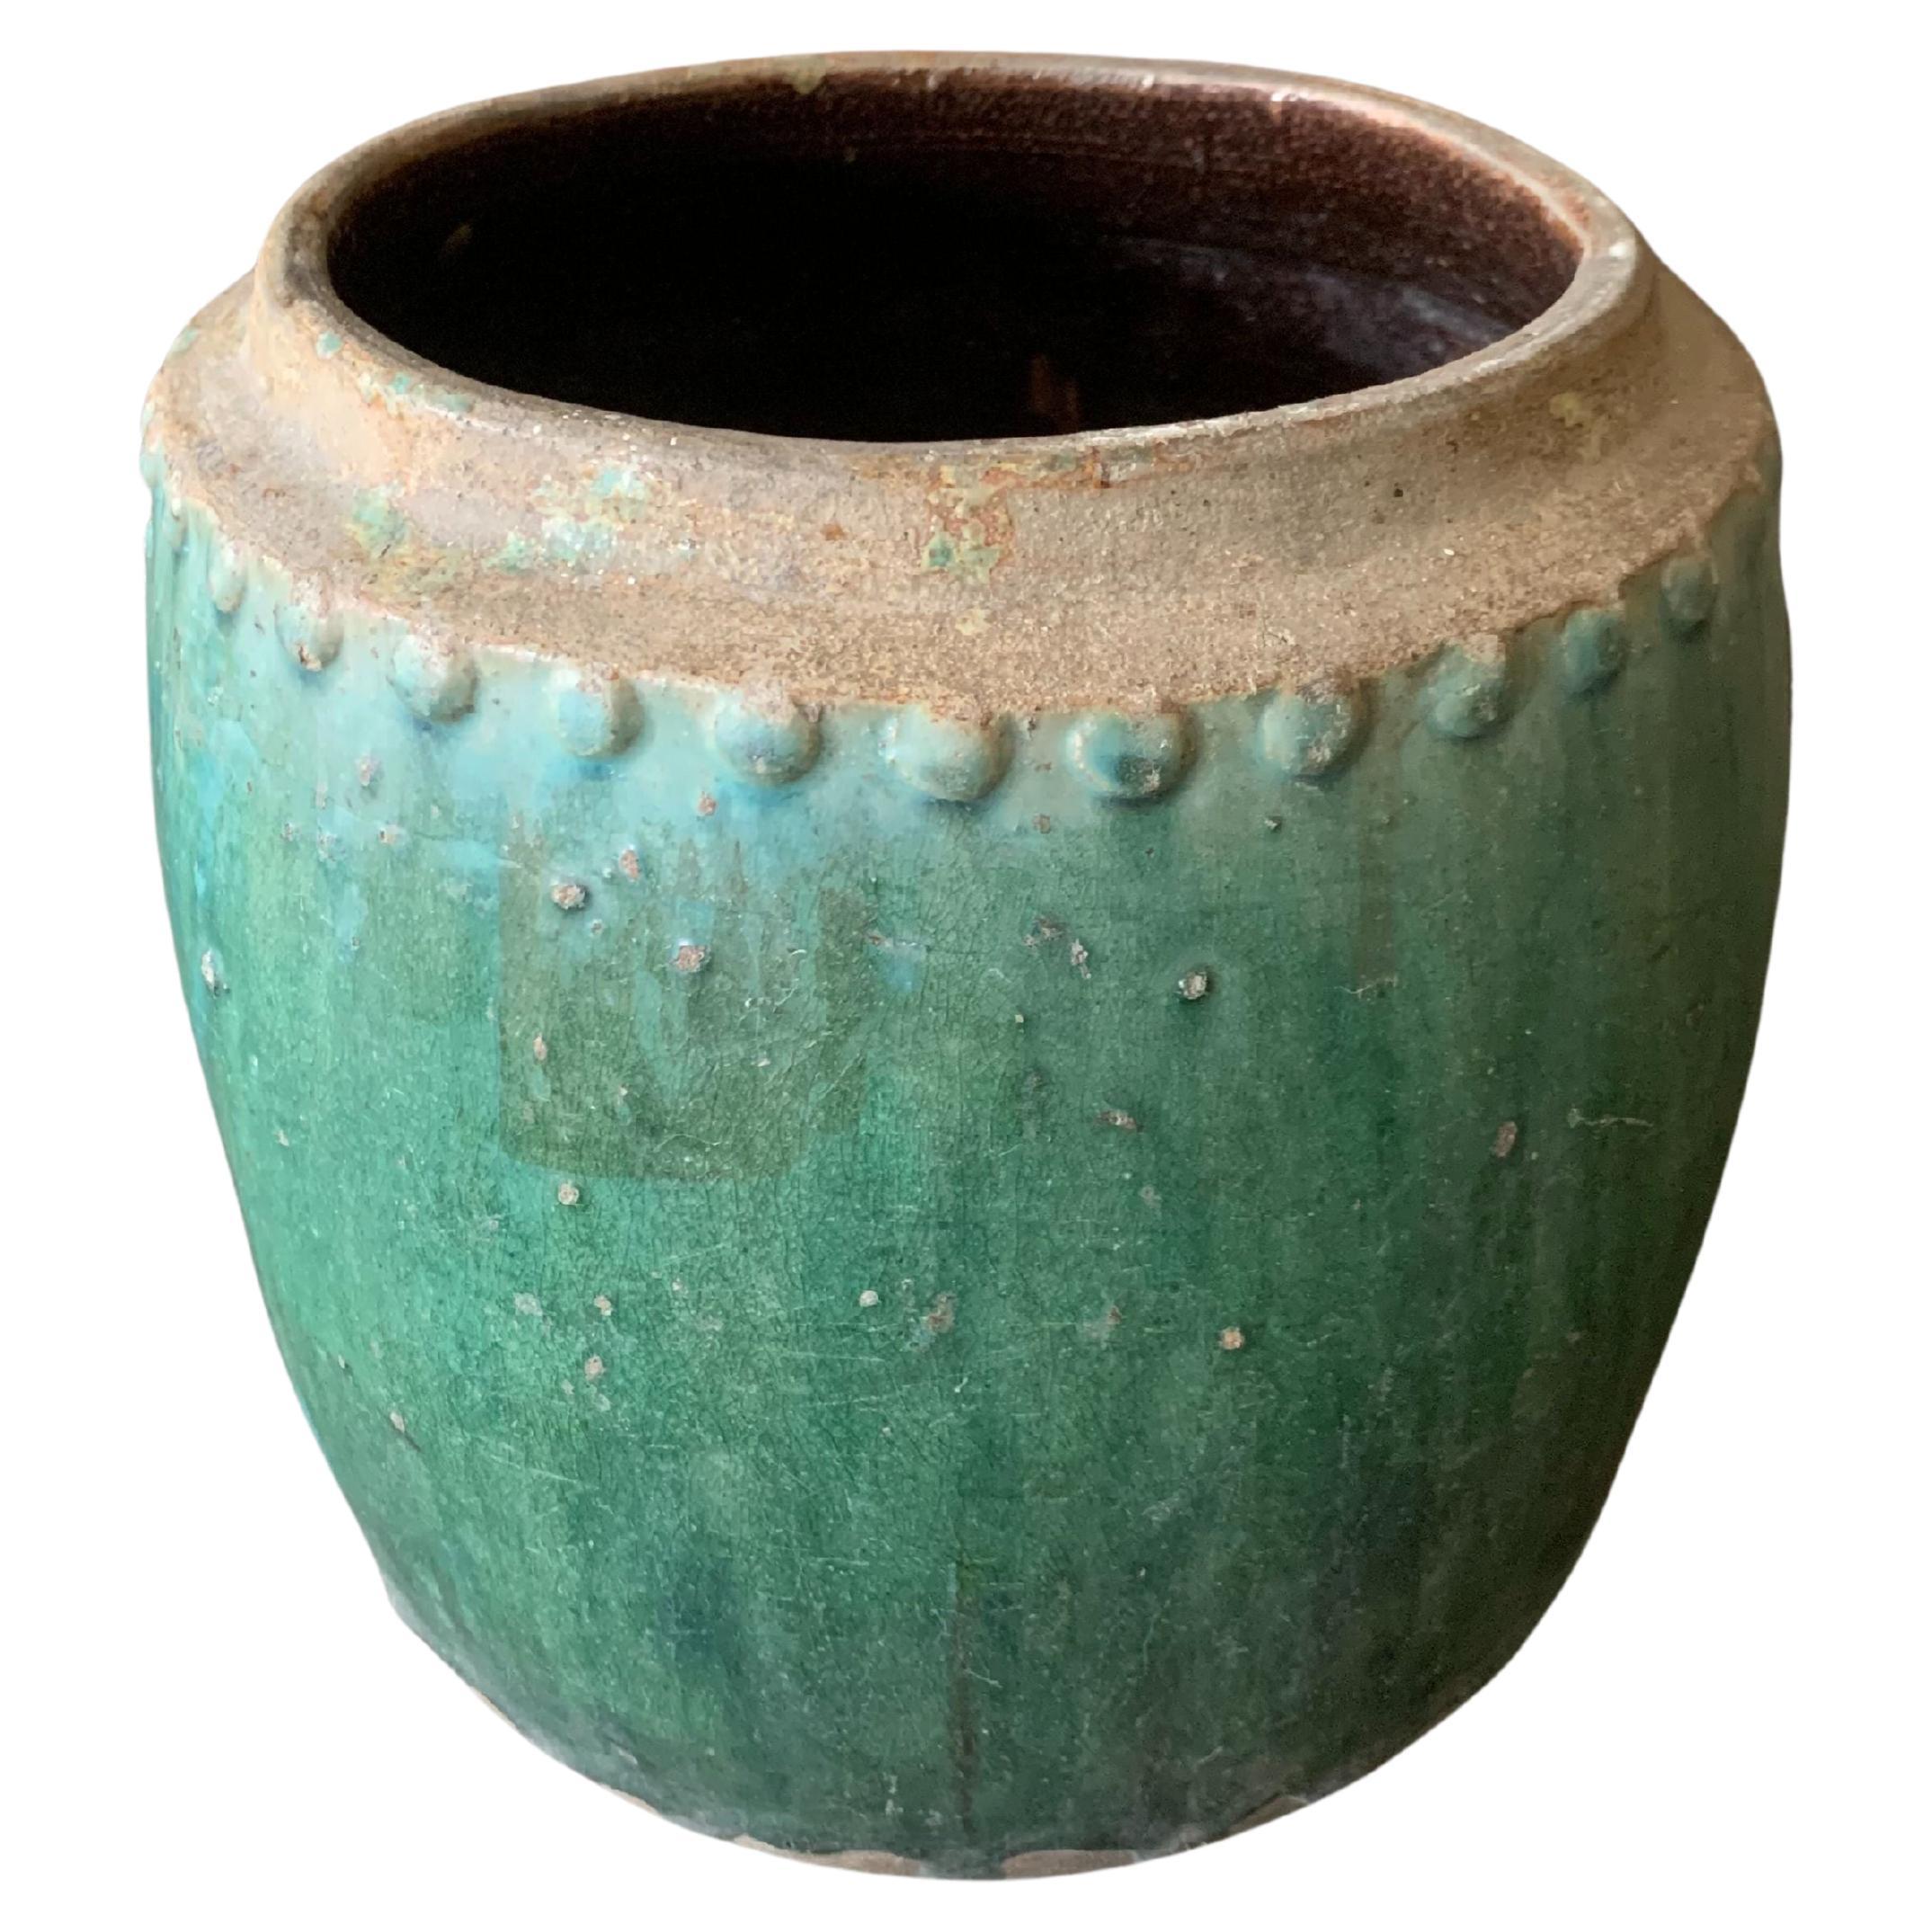 Chinesisches glasiertes Keramikgefäß / Pflanzgefäß in Schiwangrün, um 1900